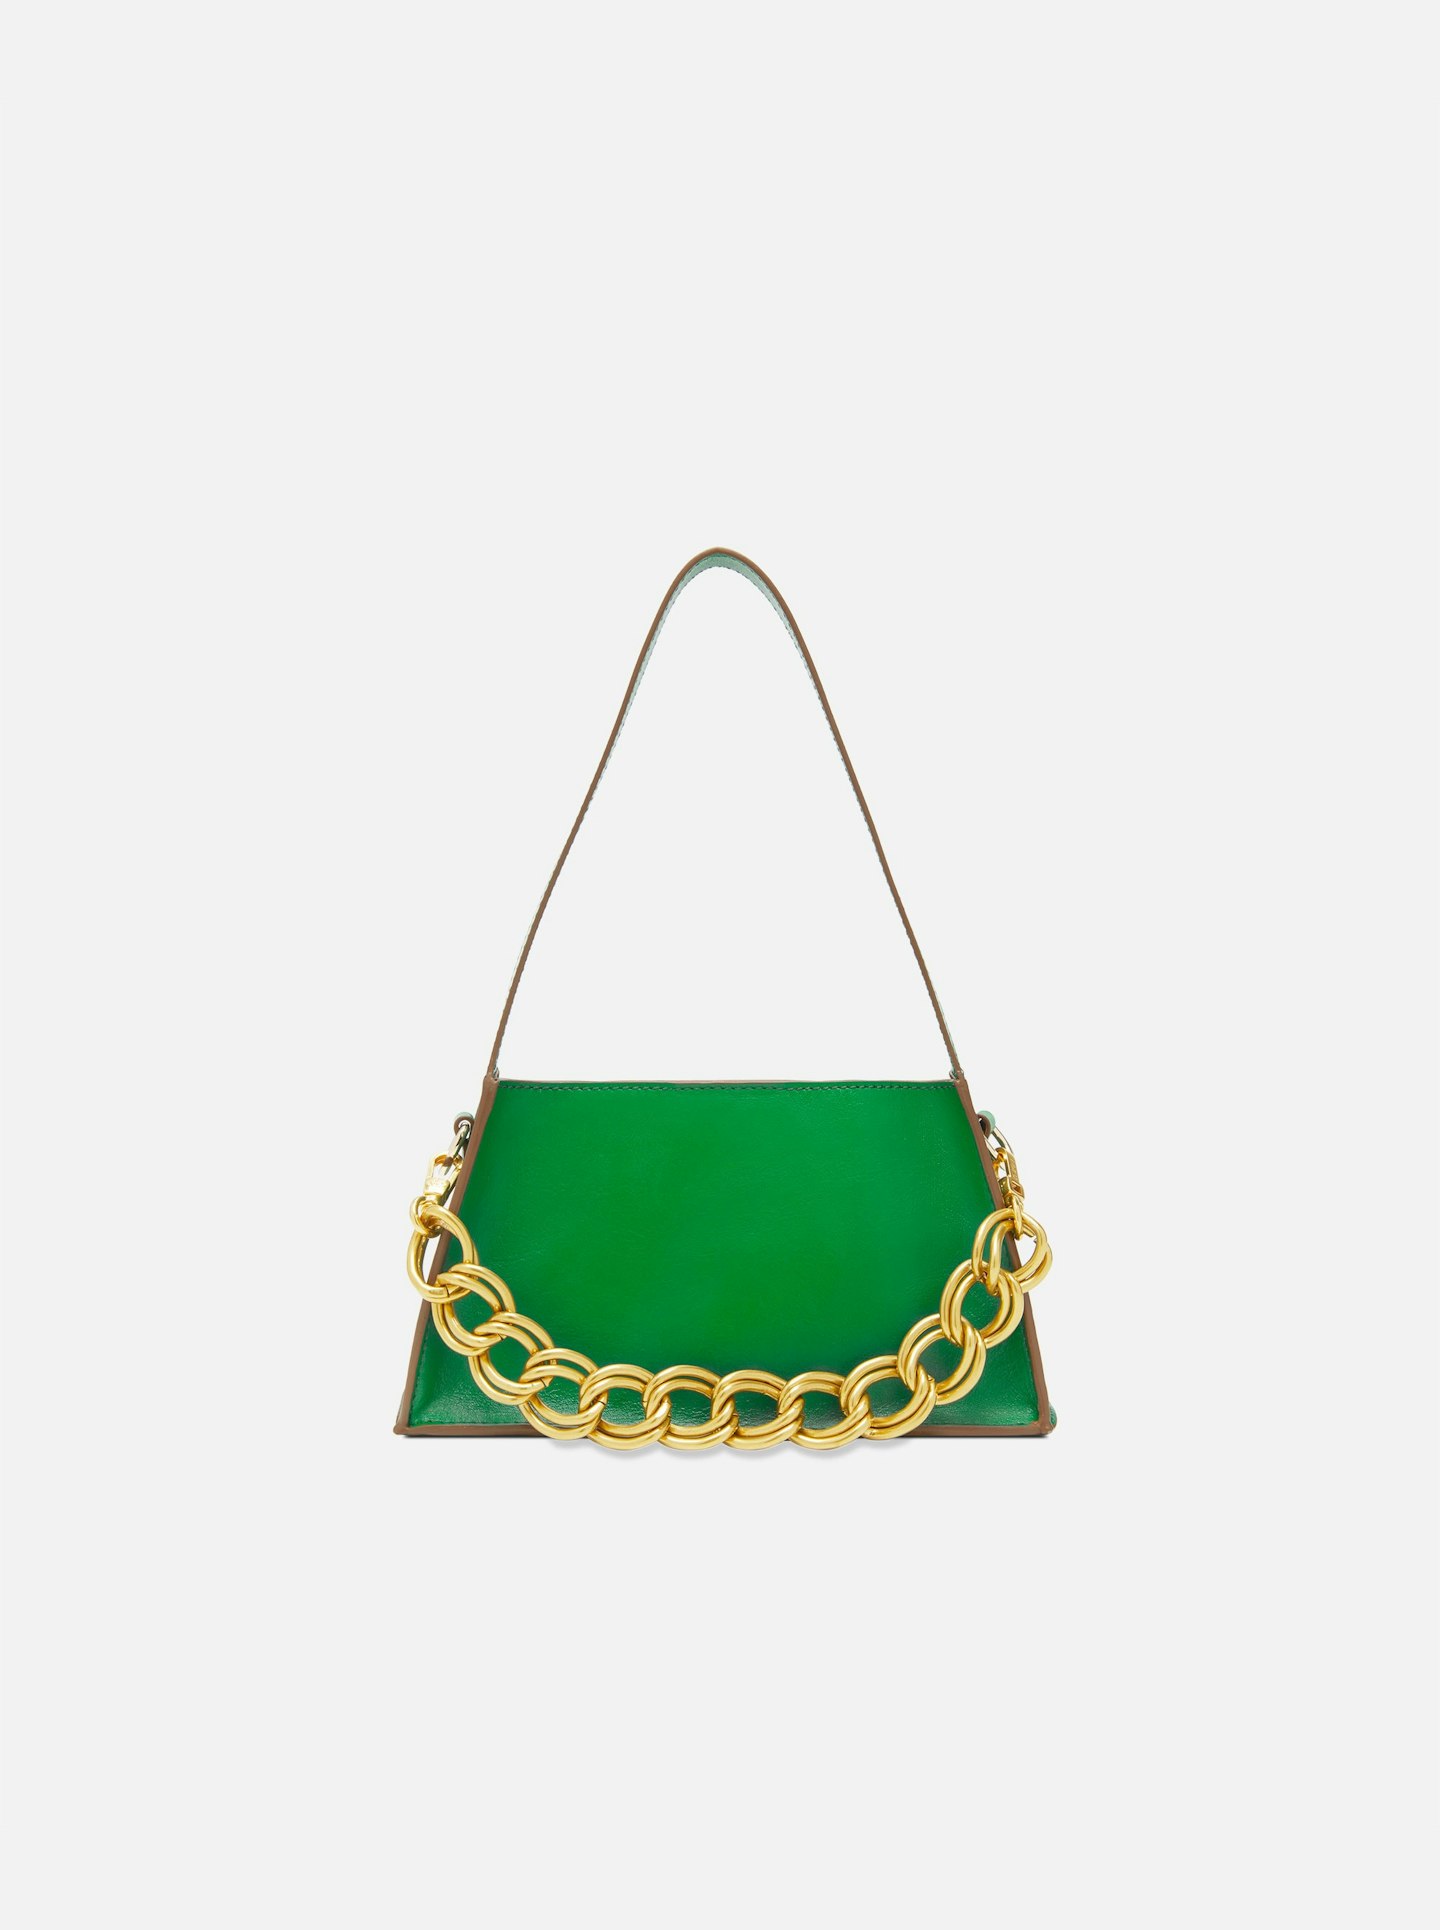 Manu Atelier, Green Kesme Bag, £350